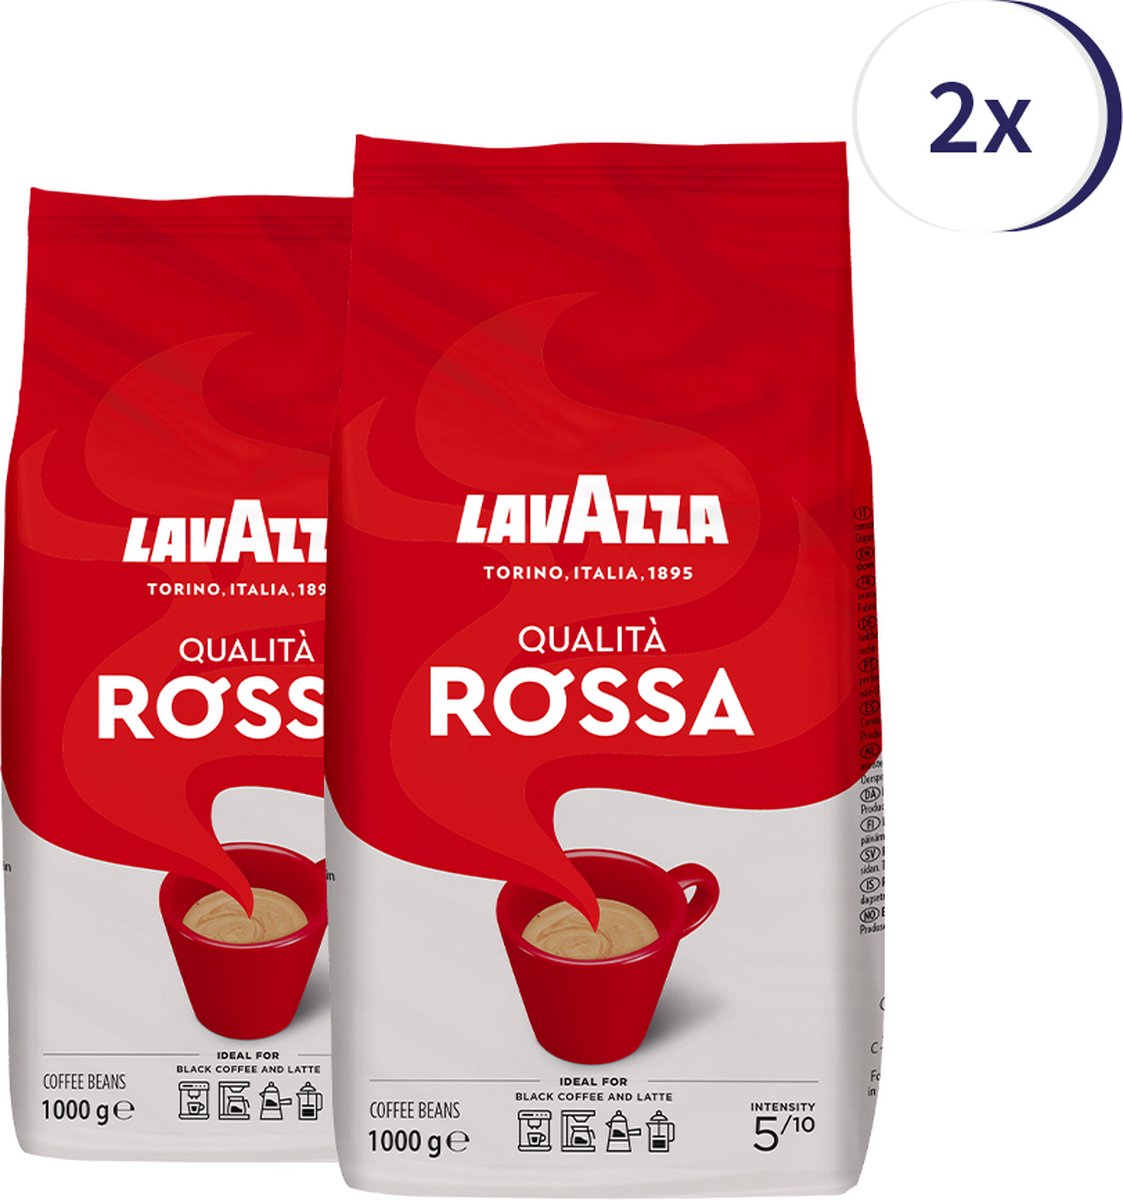 Lavazza Qualita Rossa koffiebonen 1kg x2